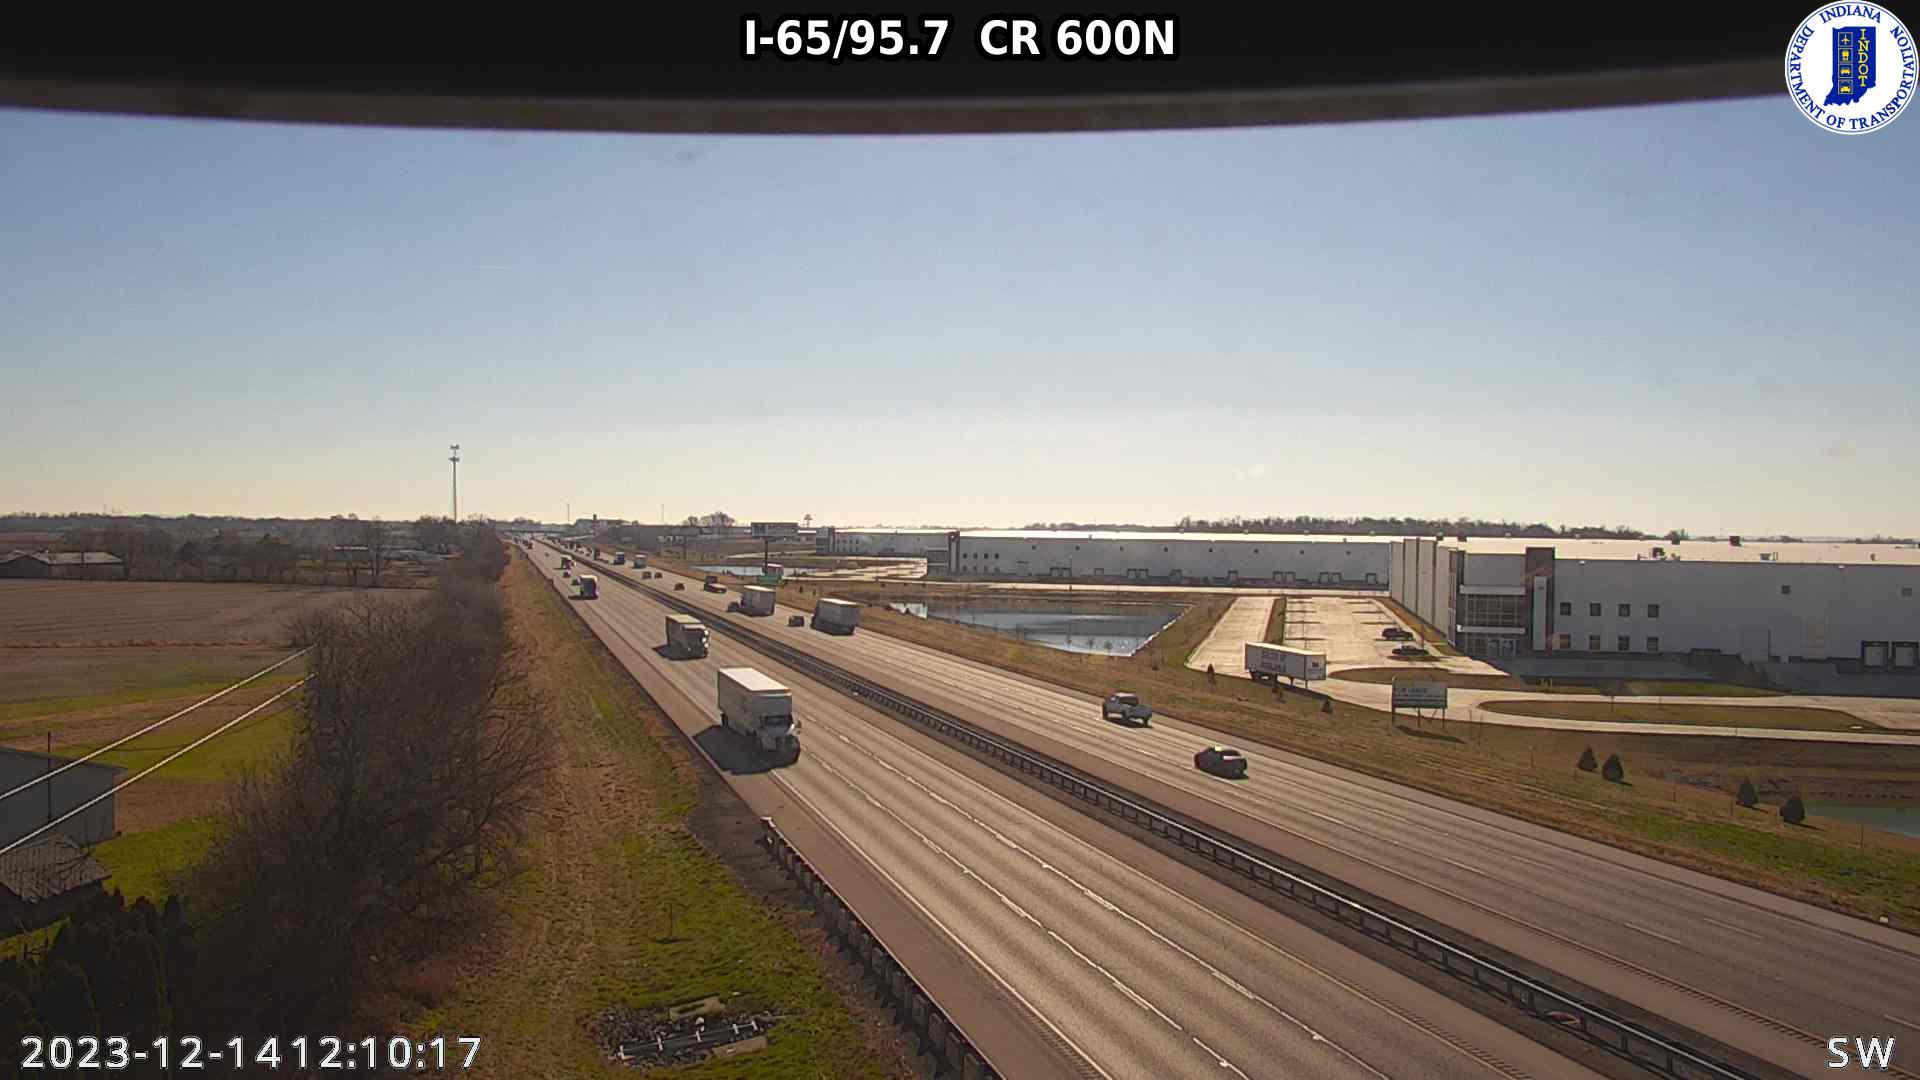 Whiteland: I-65: I-65/95.7 CR 600N Traffic Camera